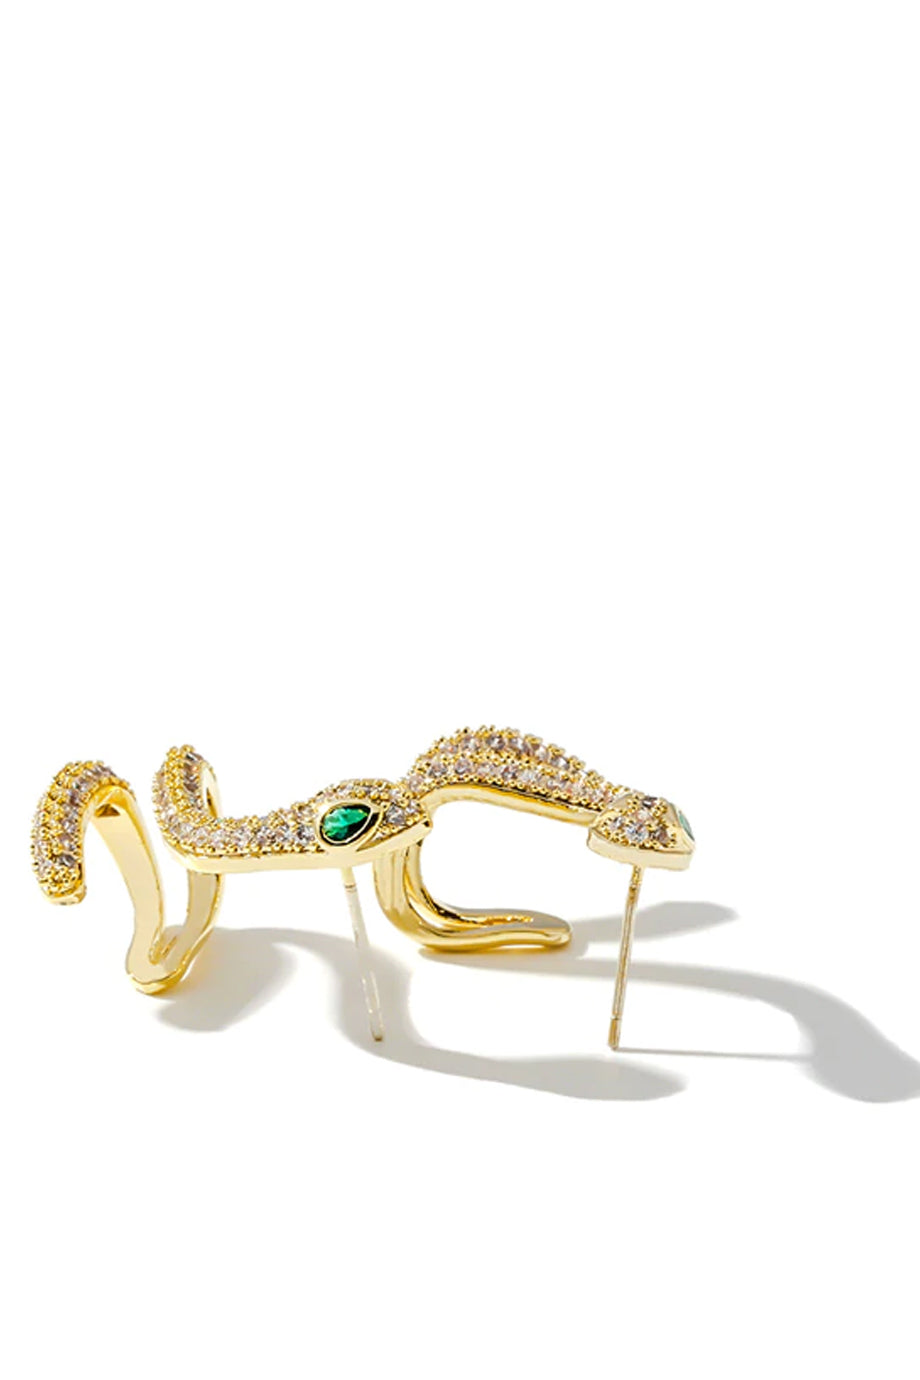 Embry Χρυσά Σκουλαρίκια Φίδι με Κρύσταλλα | Κοσμήματα - Σκουλαρίκια